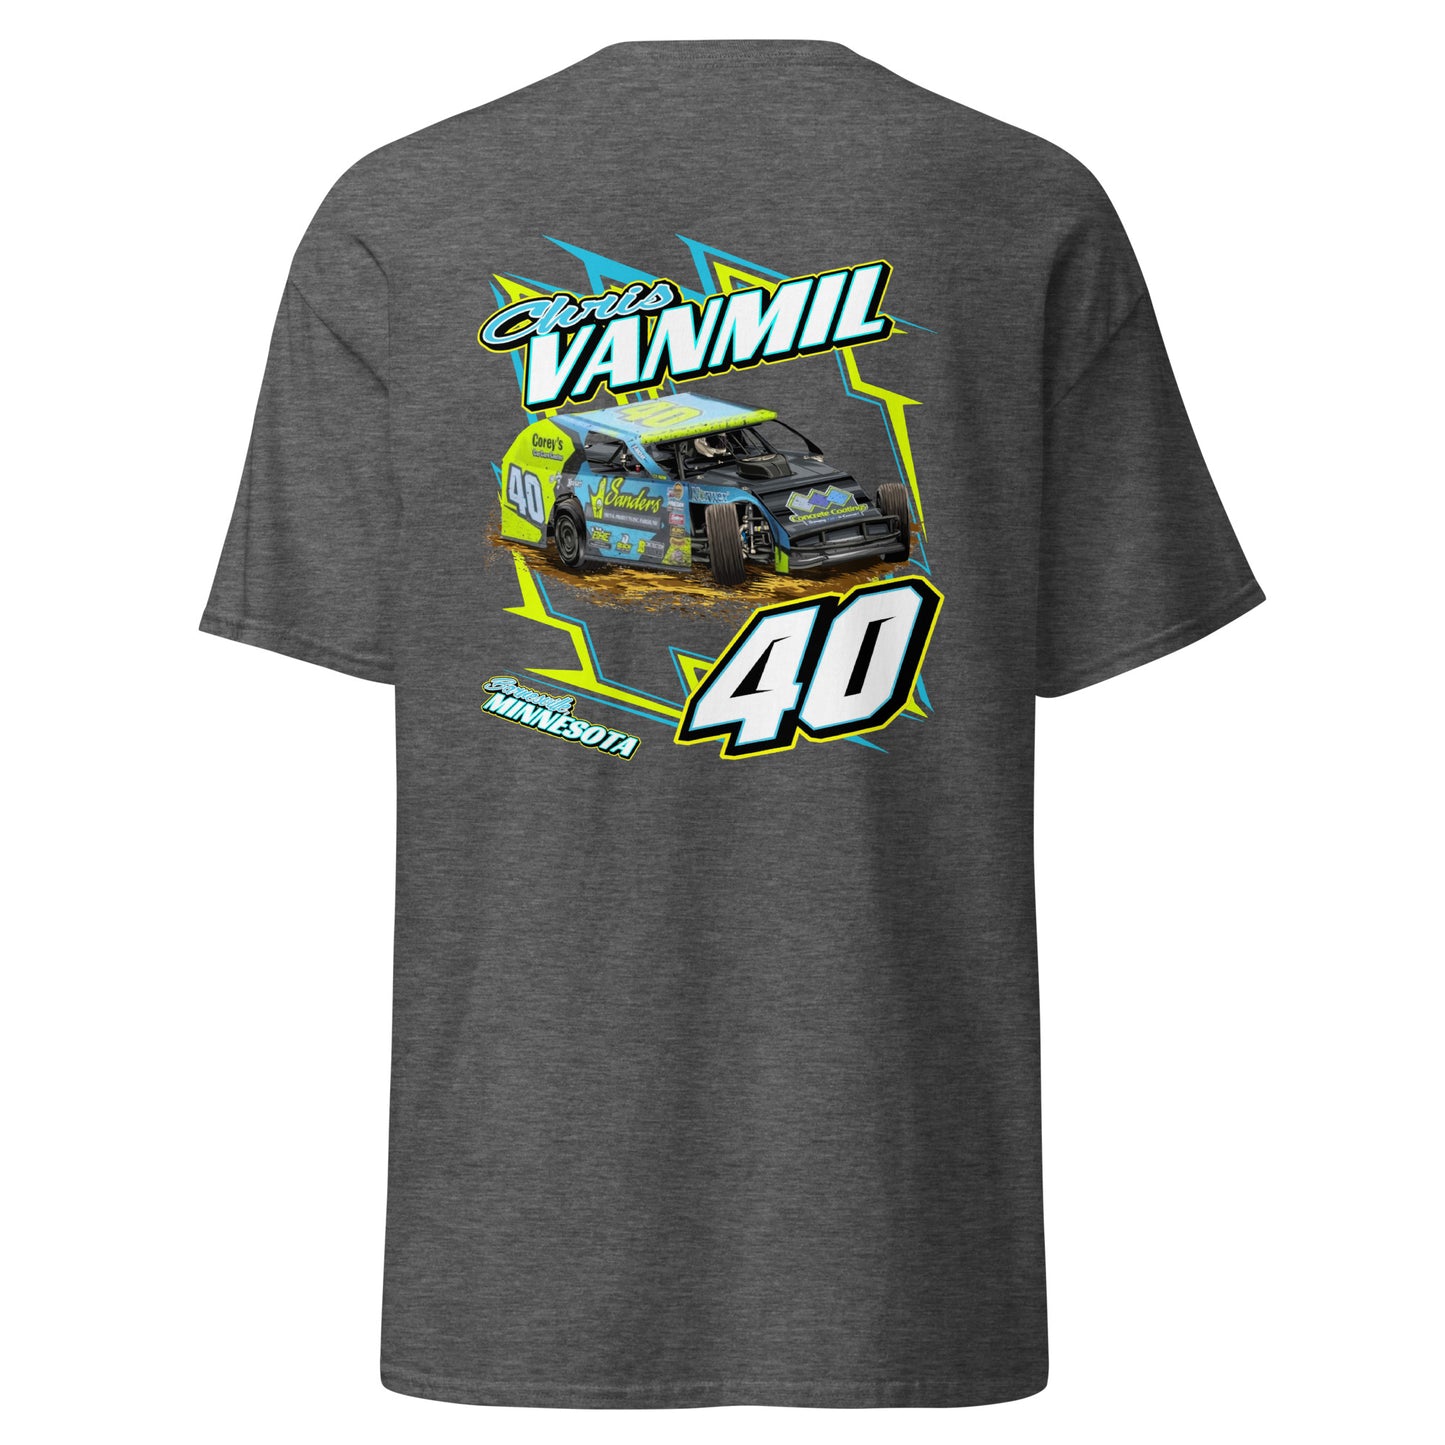 Chris Vanmil Adult T-Shirt